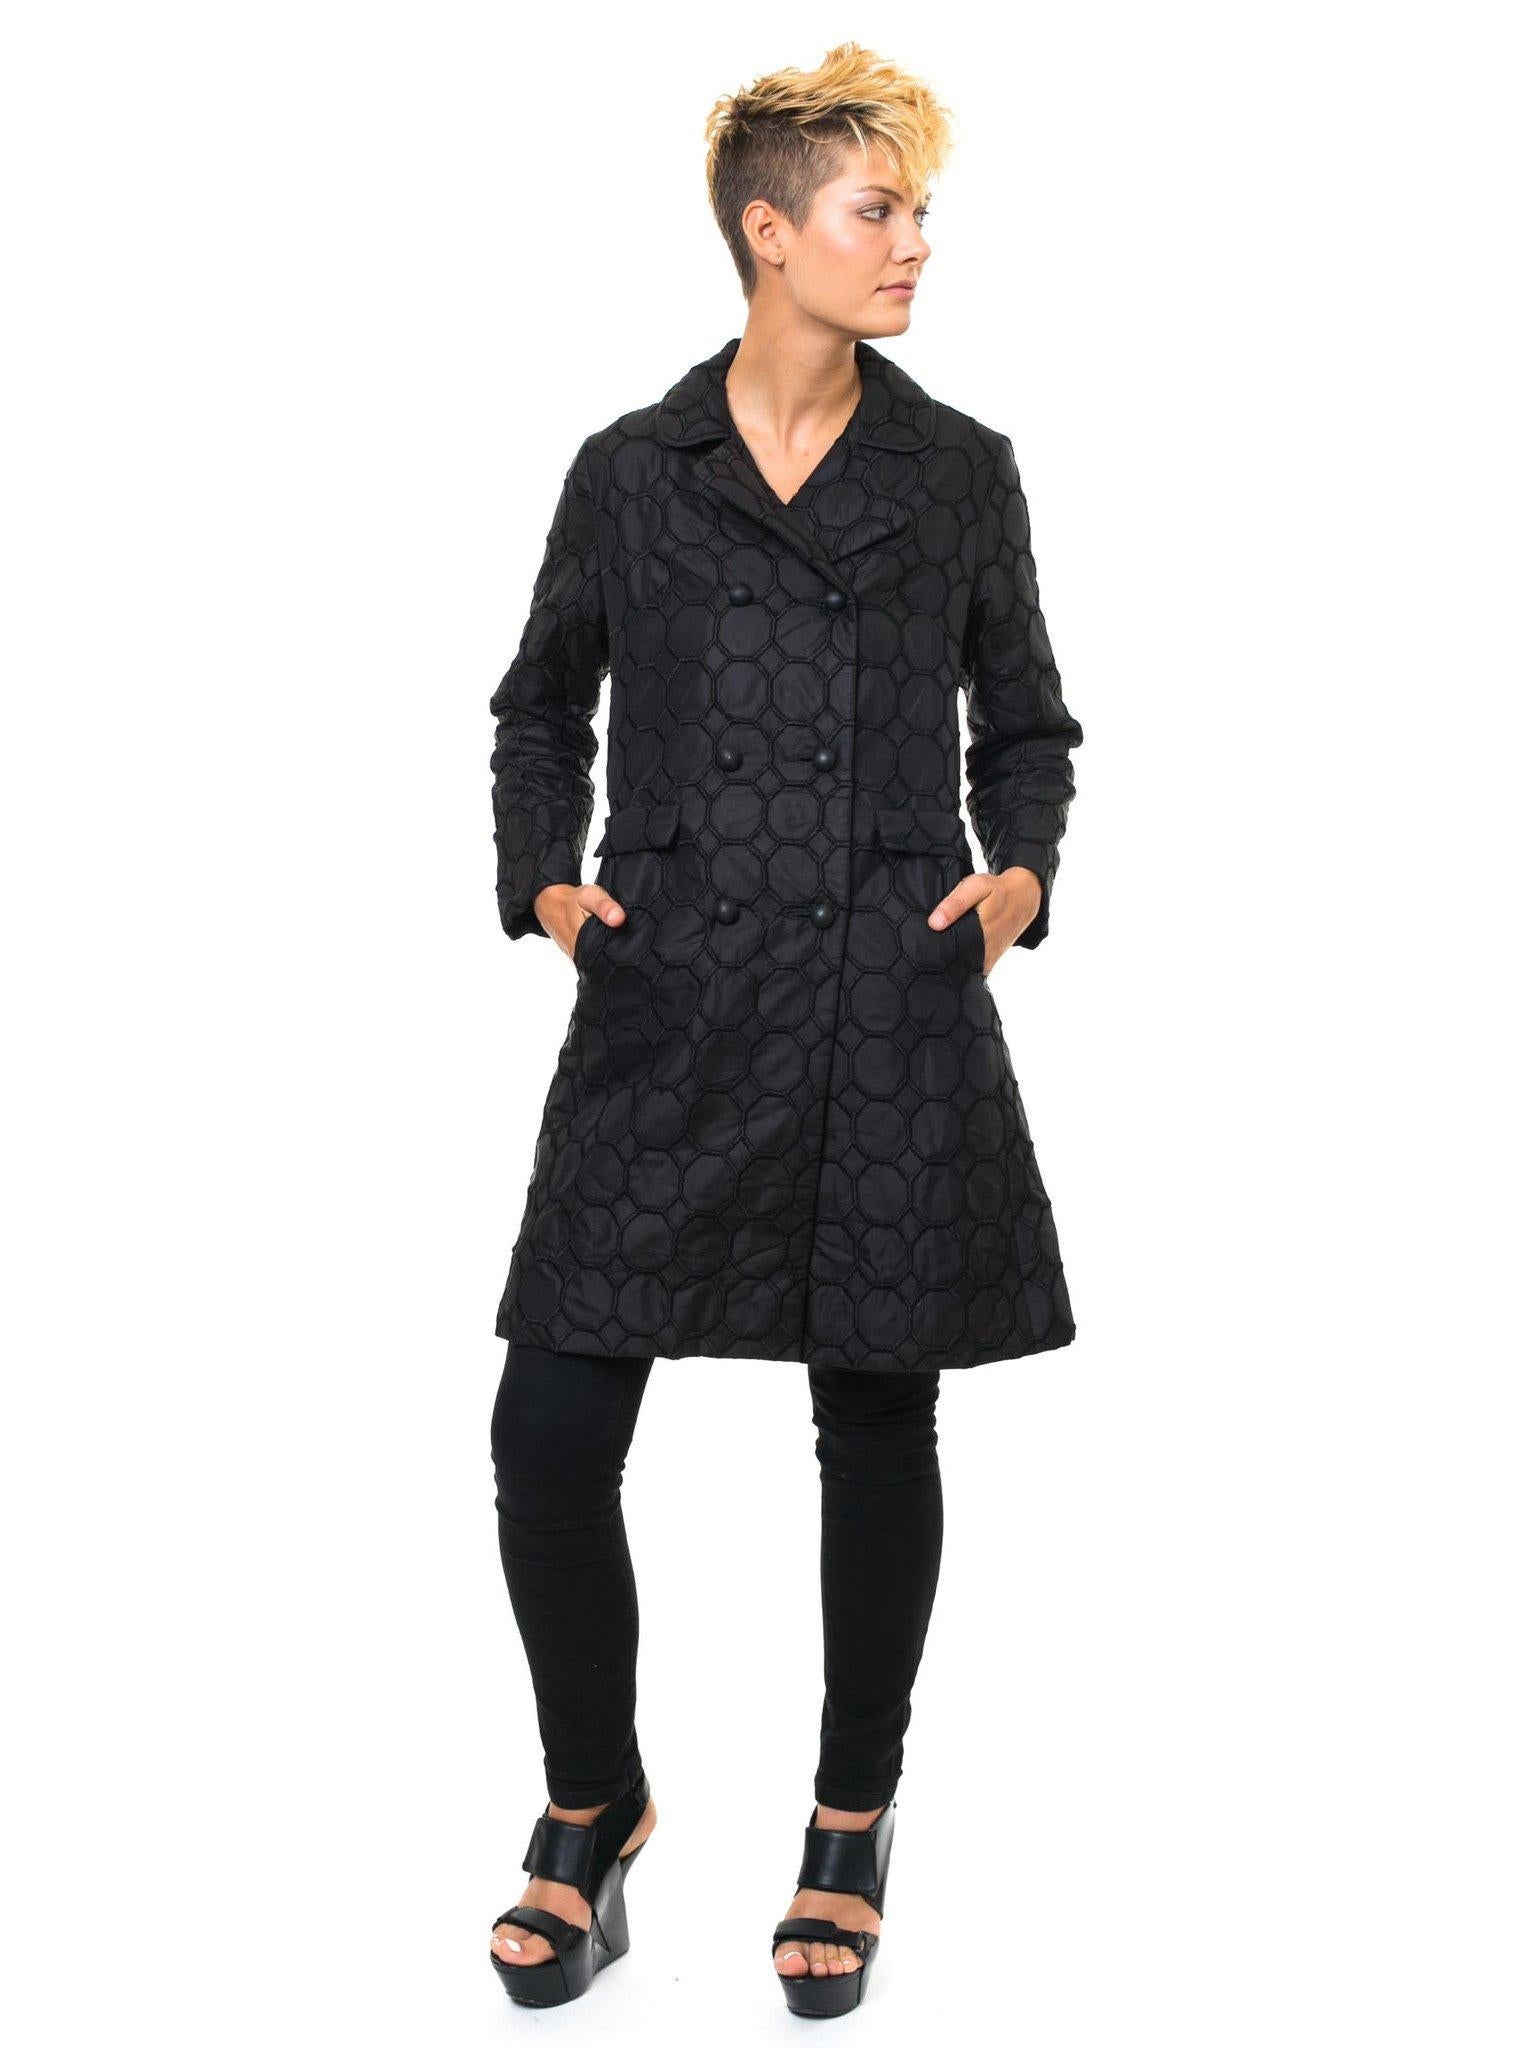 manteau Mod Mod des années 1960 LANSON noir brodé de motifs cubiques